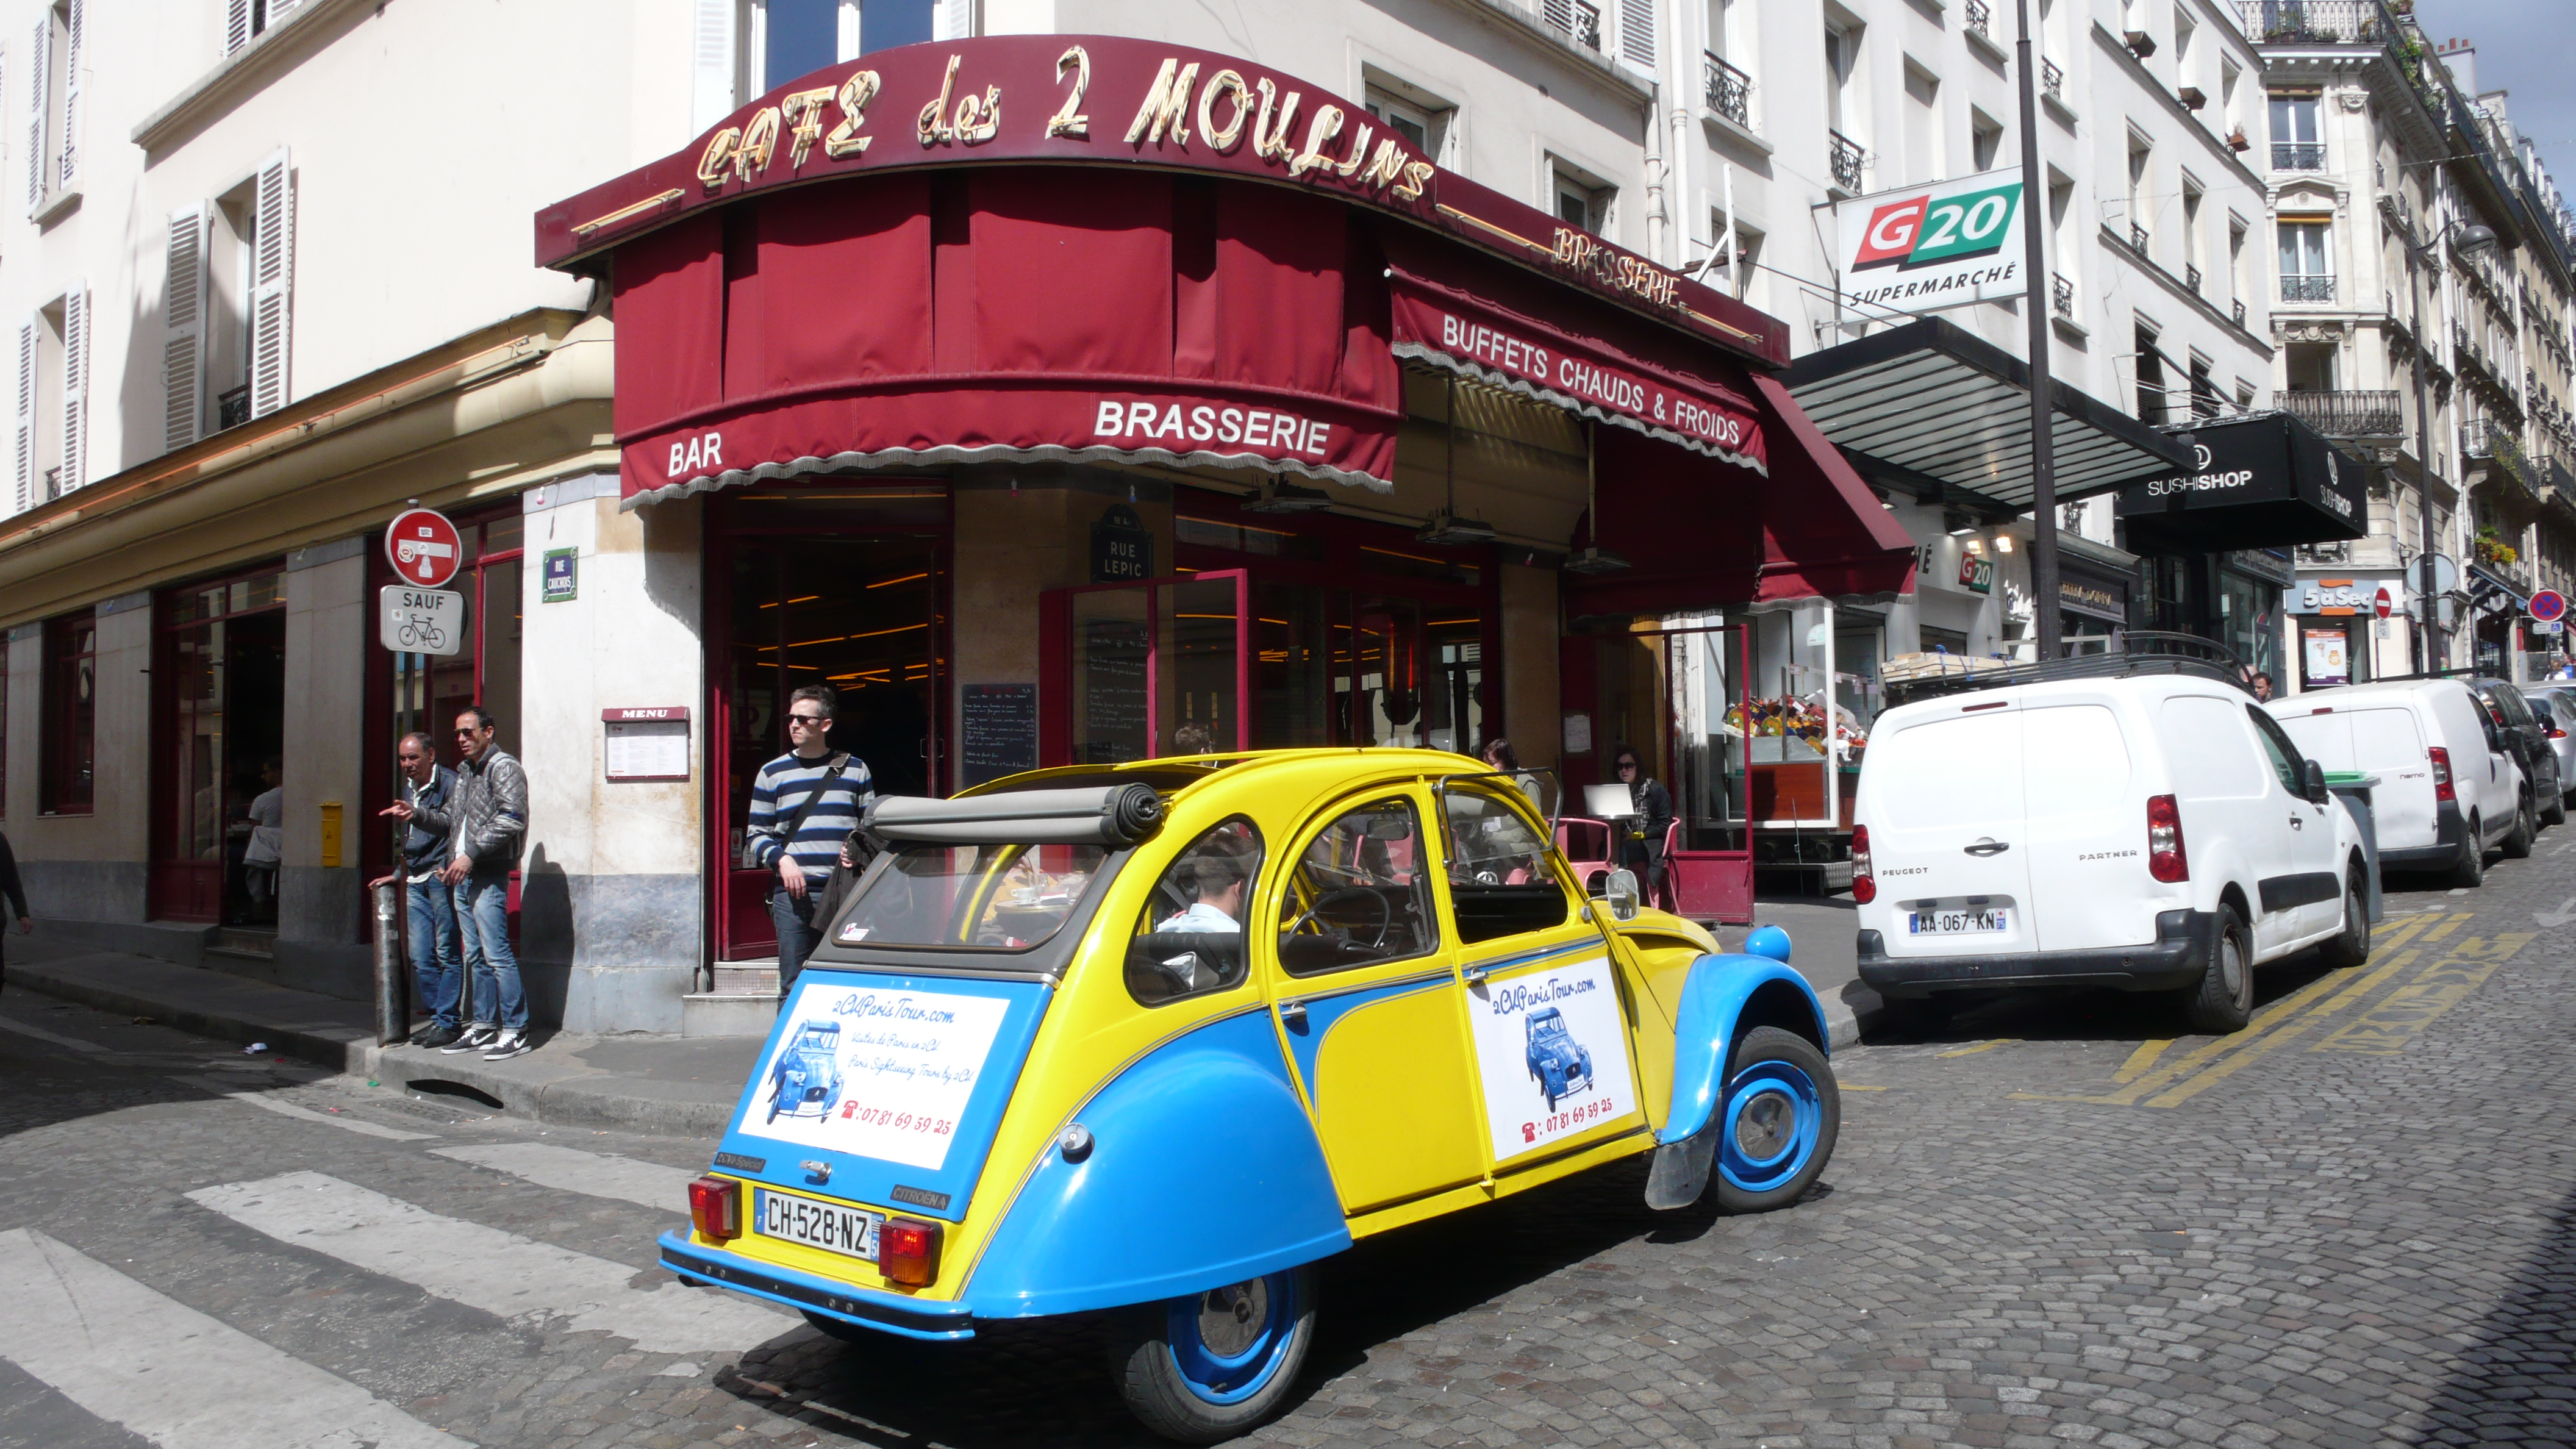 2CV Paris Tour - Visit Paris by 2CV! The café of Amélie Poulain : Les Deux Moulins